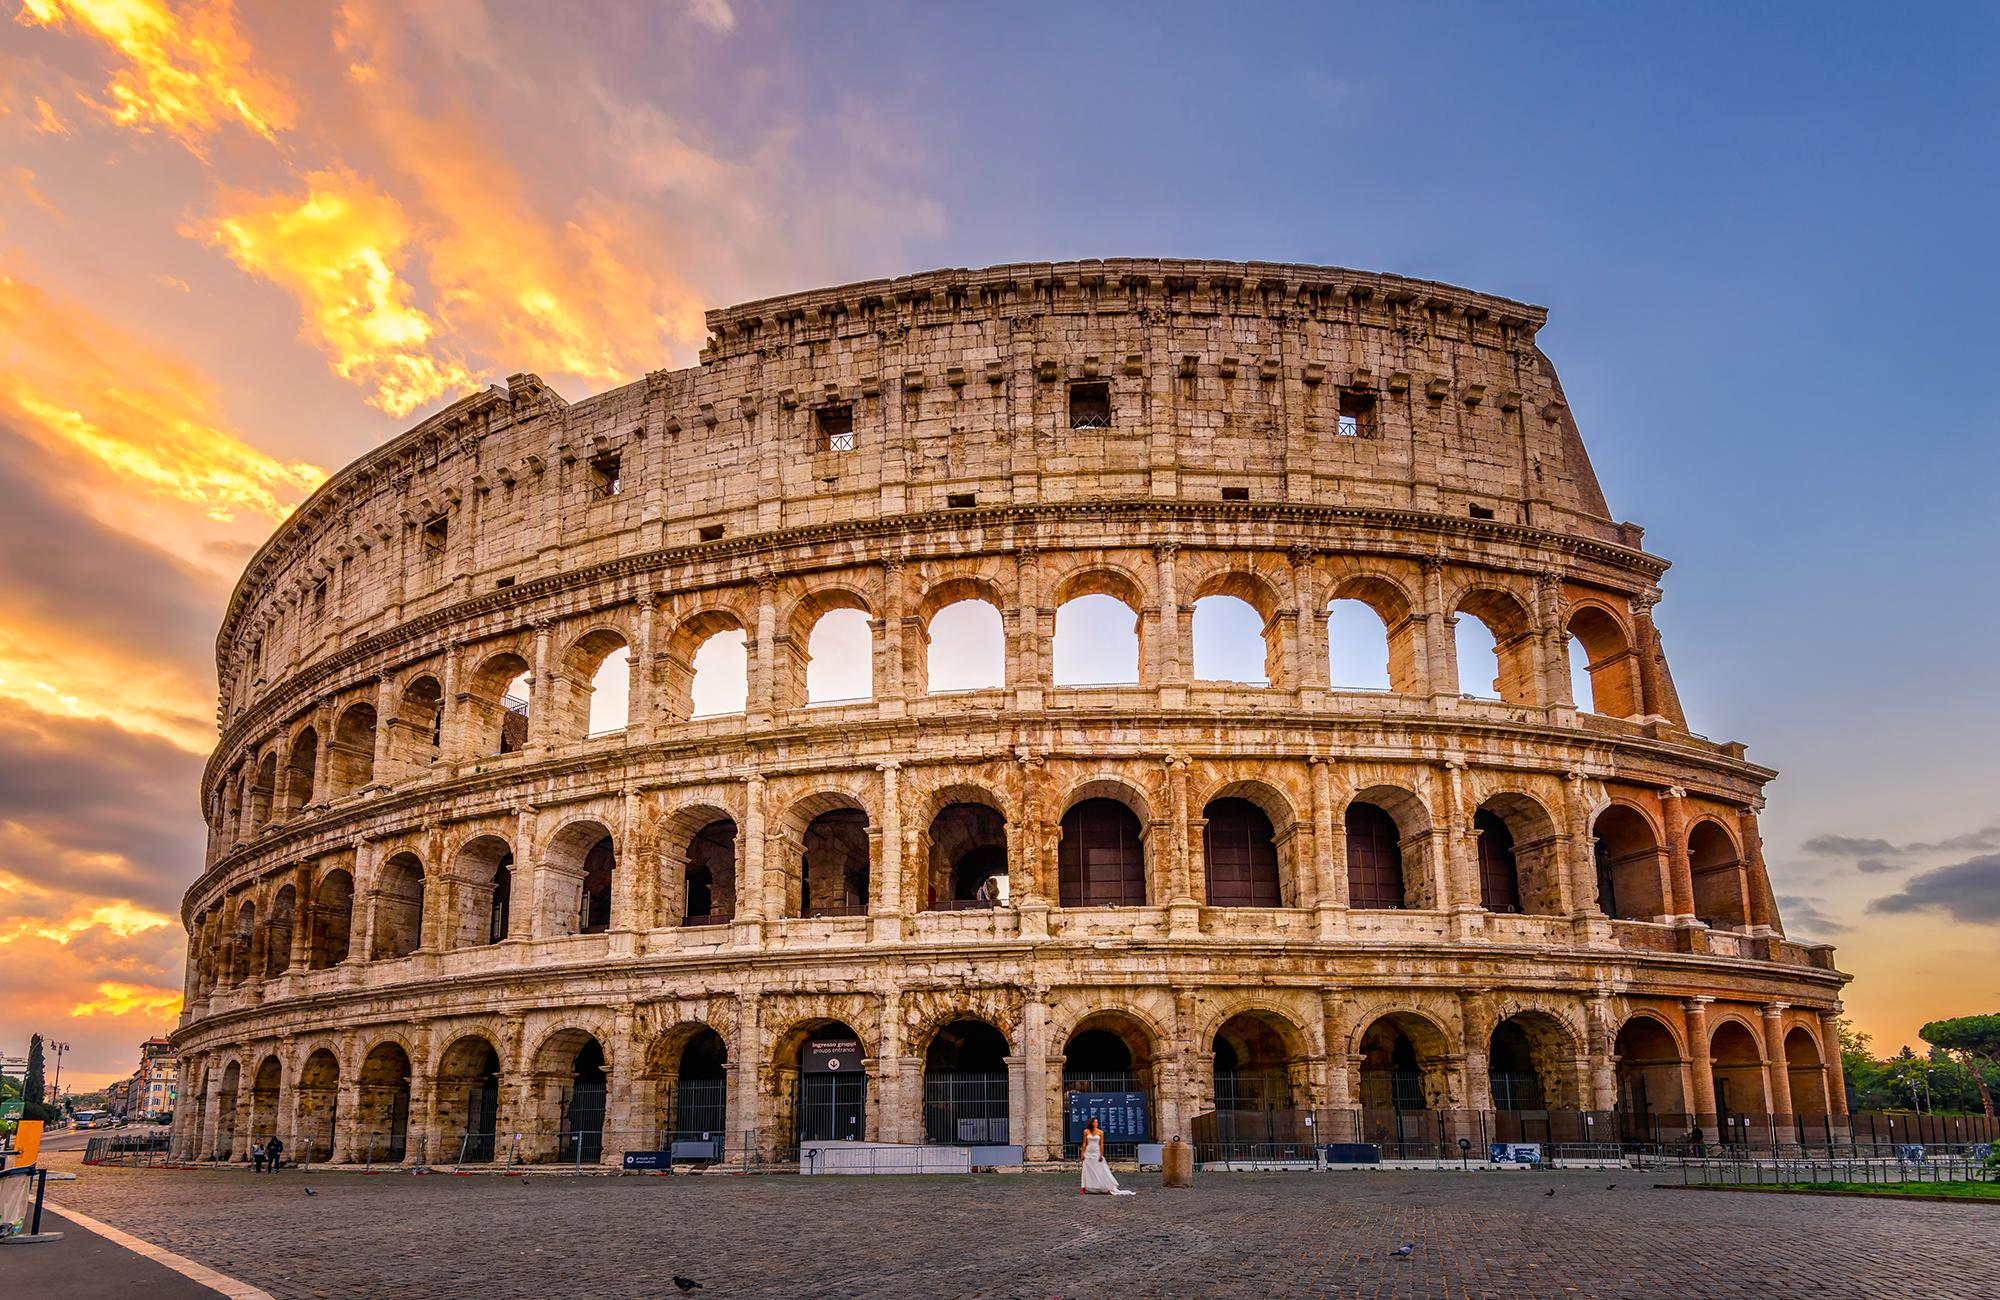 Rome là điểm đến tham quan du lịch của rất nhiều du khách trên thế giới, không chỉ những người đam mê văn học mà còn với những ai bị thu hút bởi nét đẹp cổ kính của nó